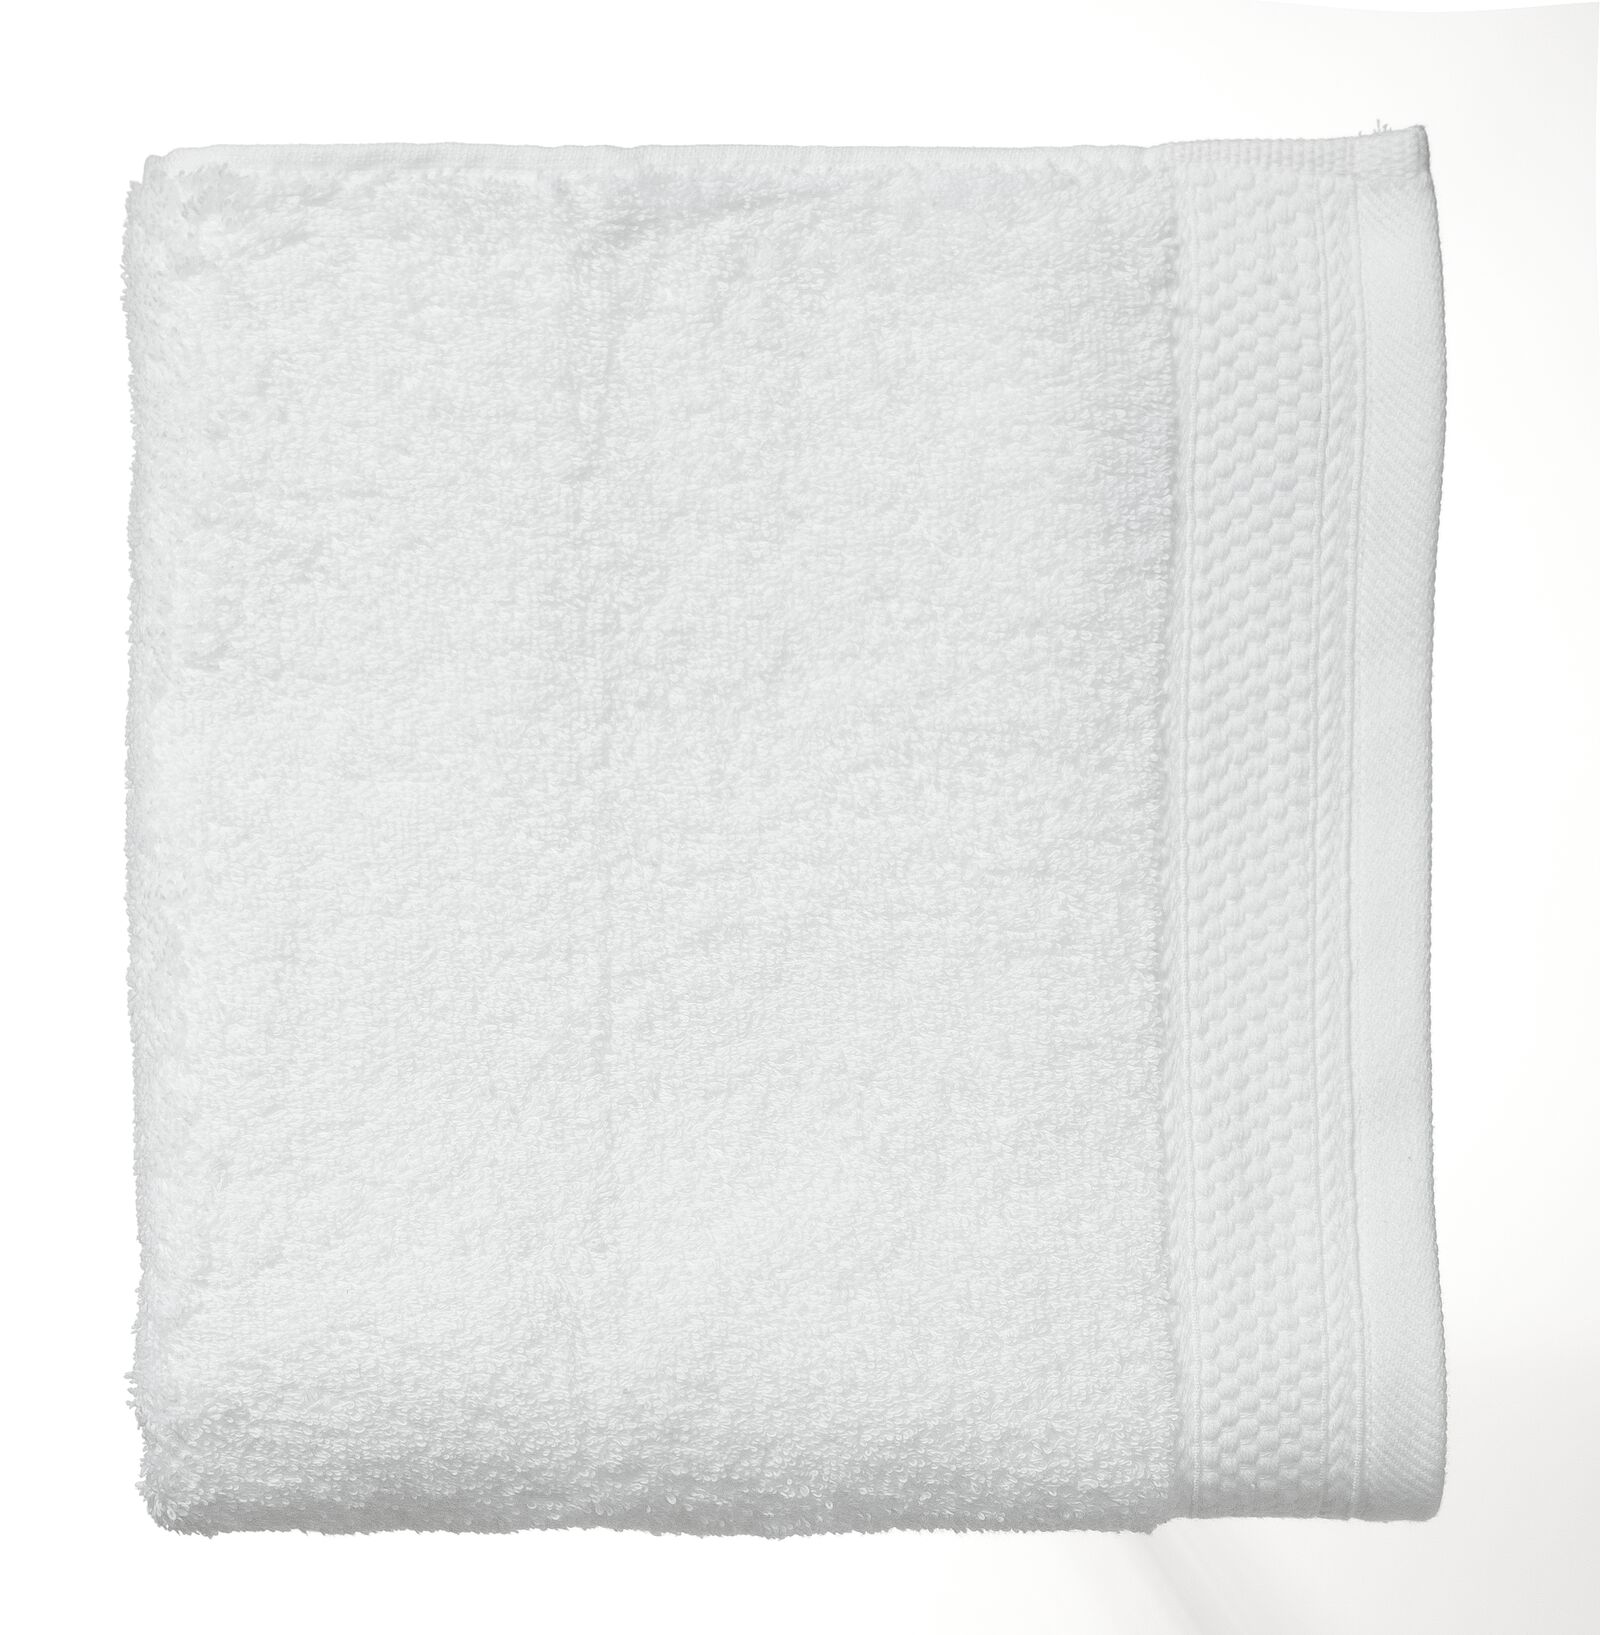 handdoek - 60 x 110 cm - hotelkwaliteit - wit - 5216010 - HEMA